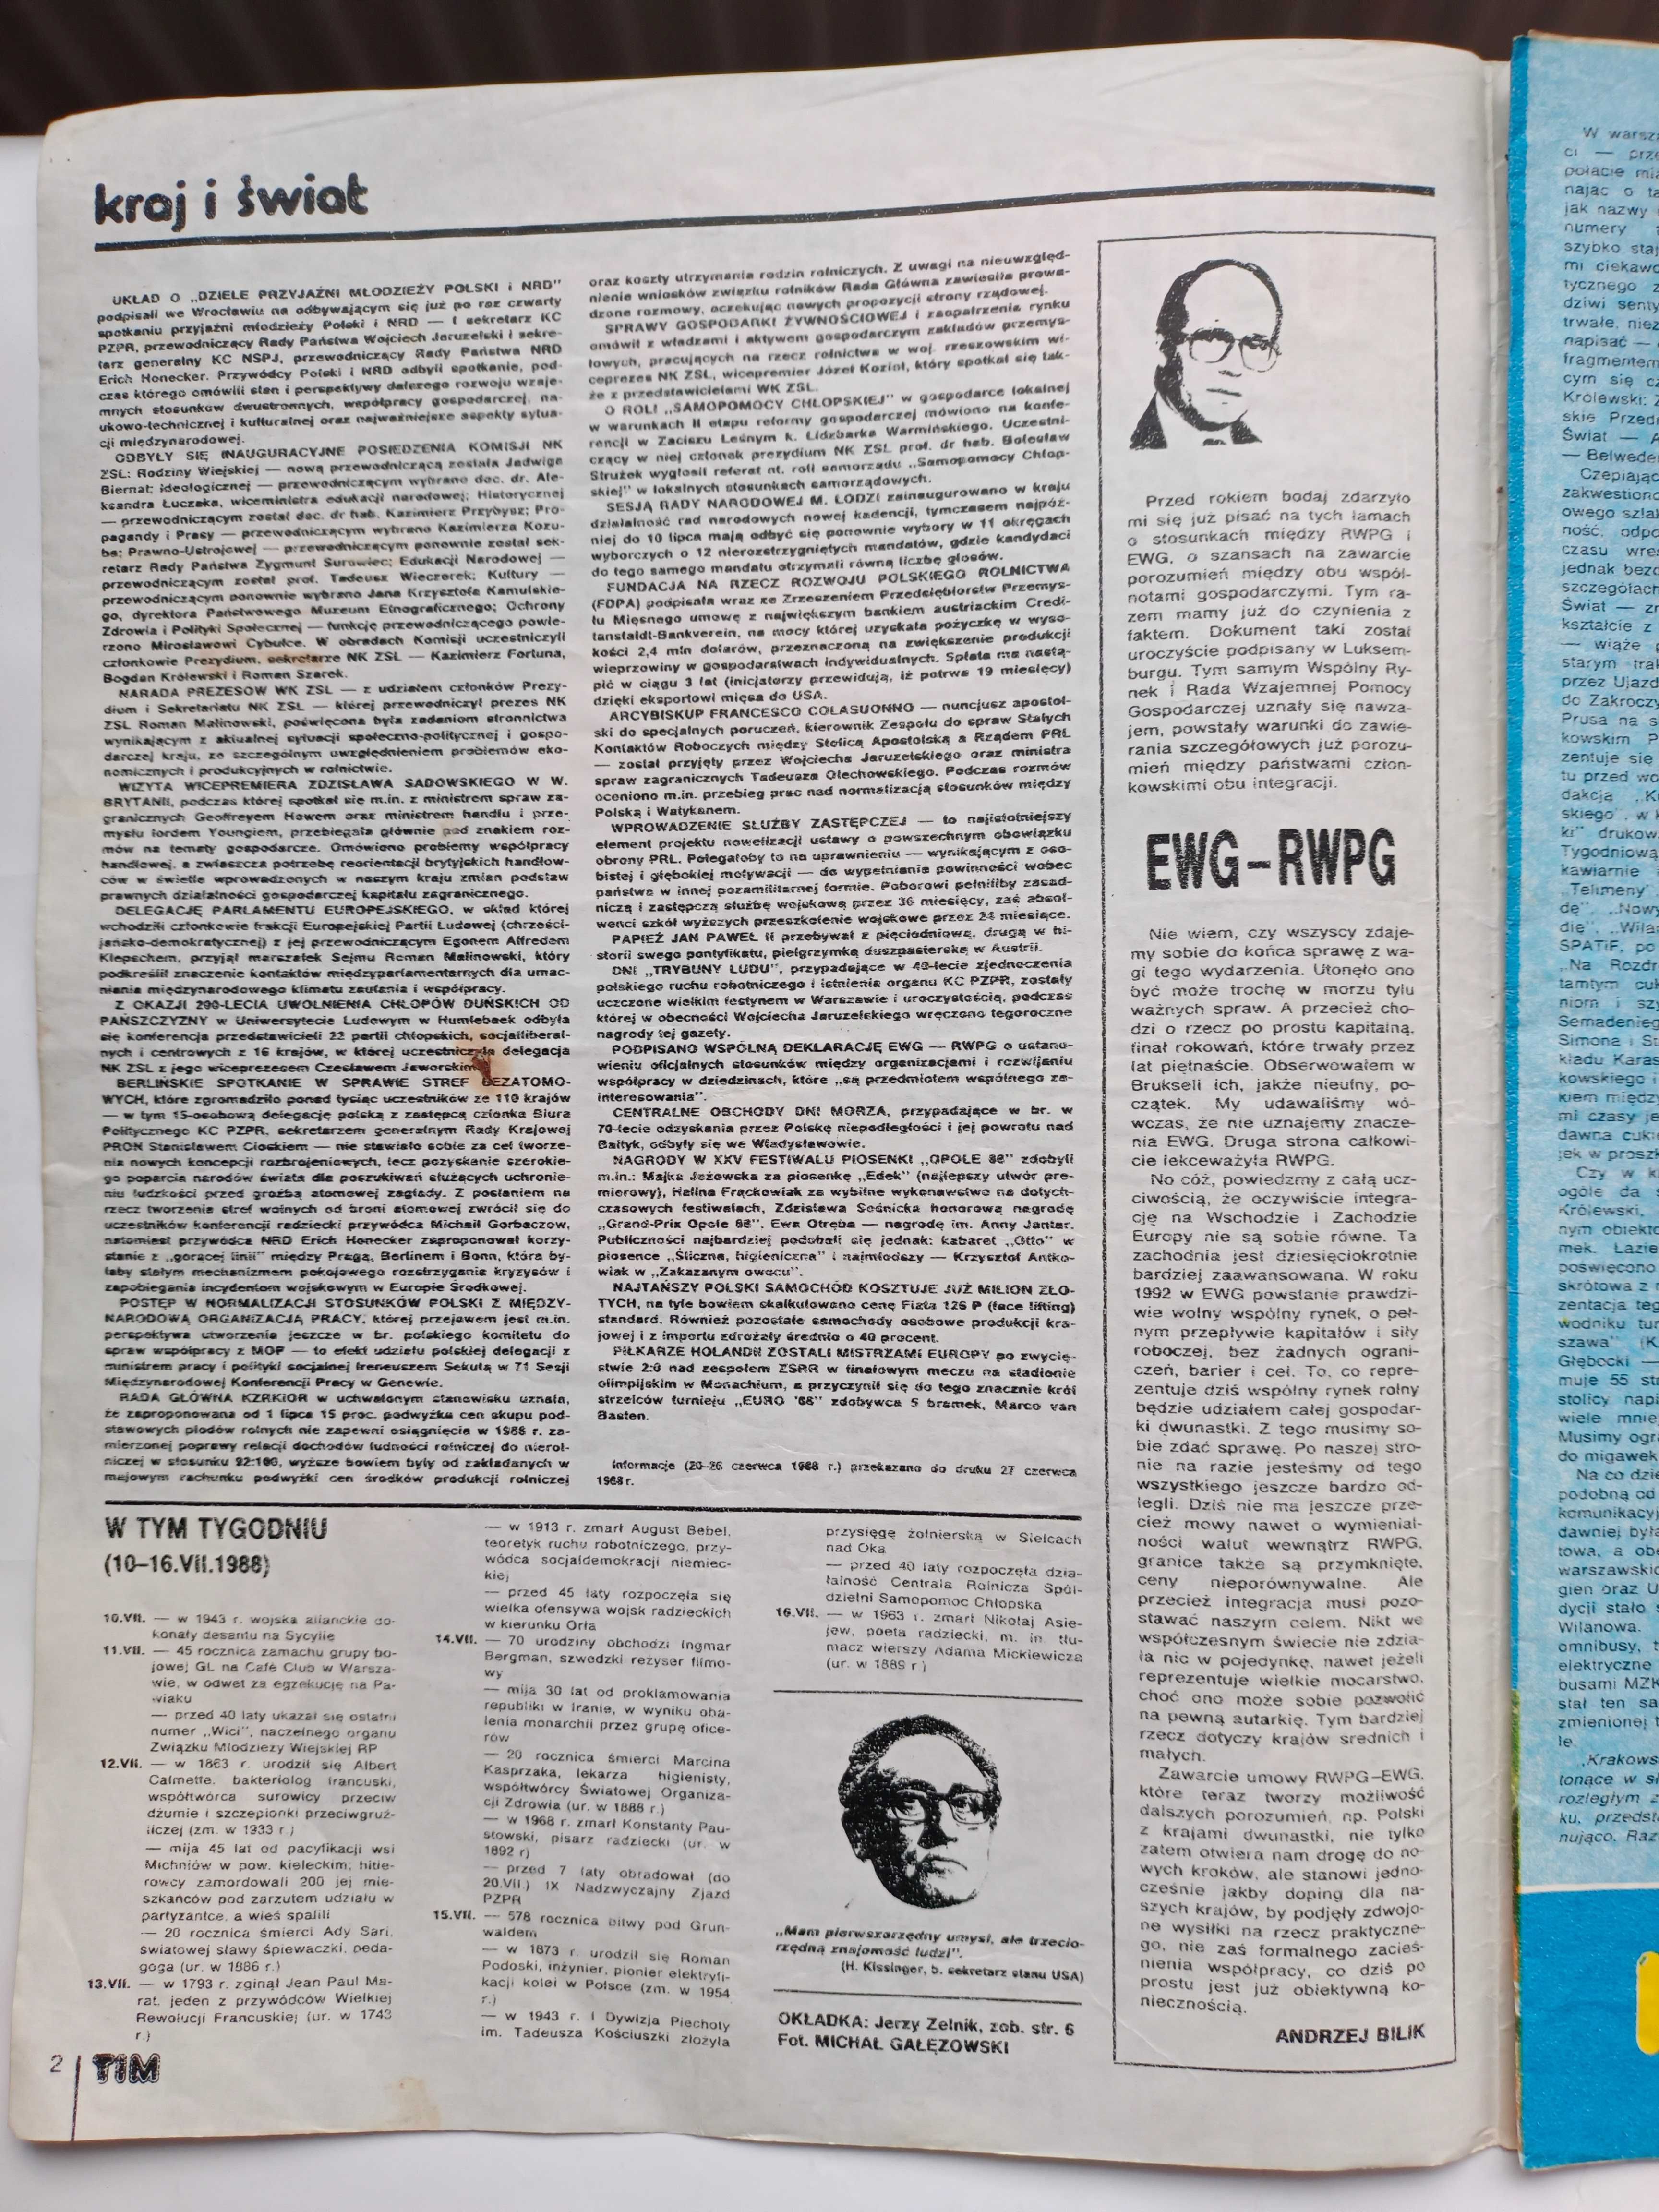 TIM Tygodniowy ilustrowany magazyn
 Nr 28 z 8 lipca 1988 r.